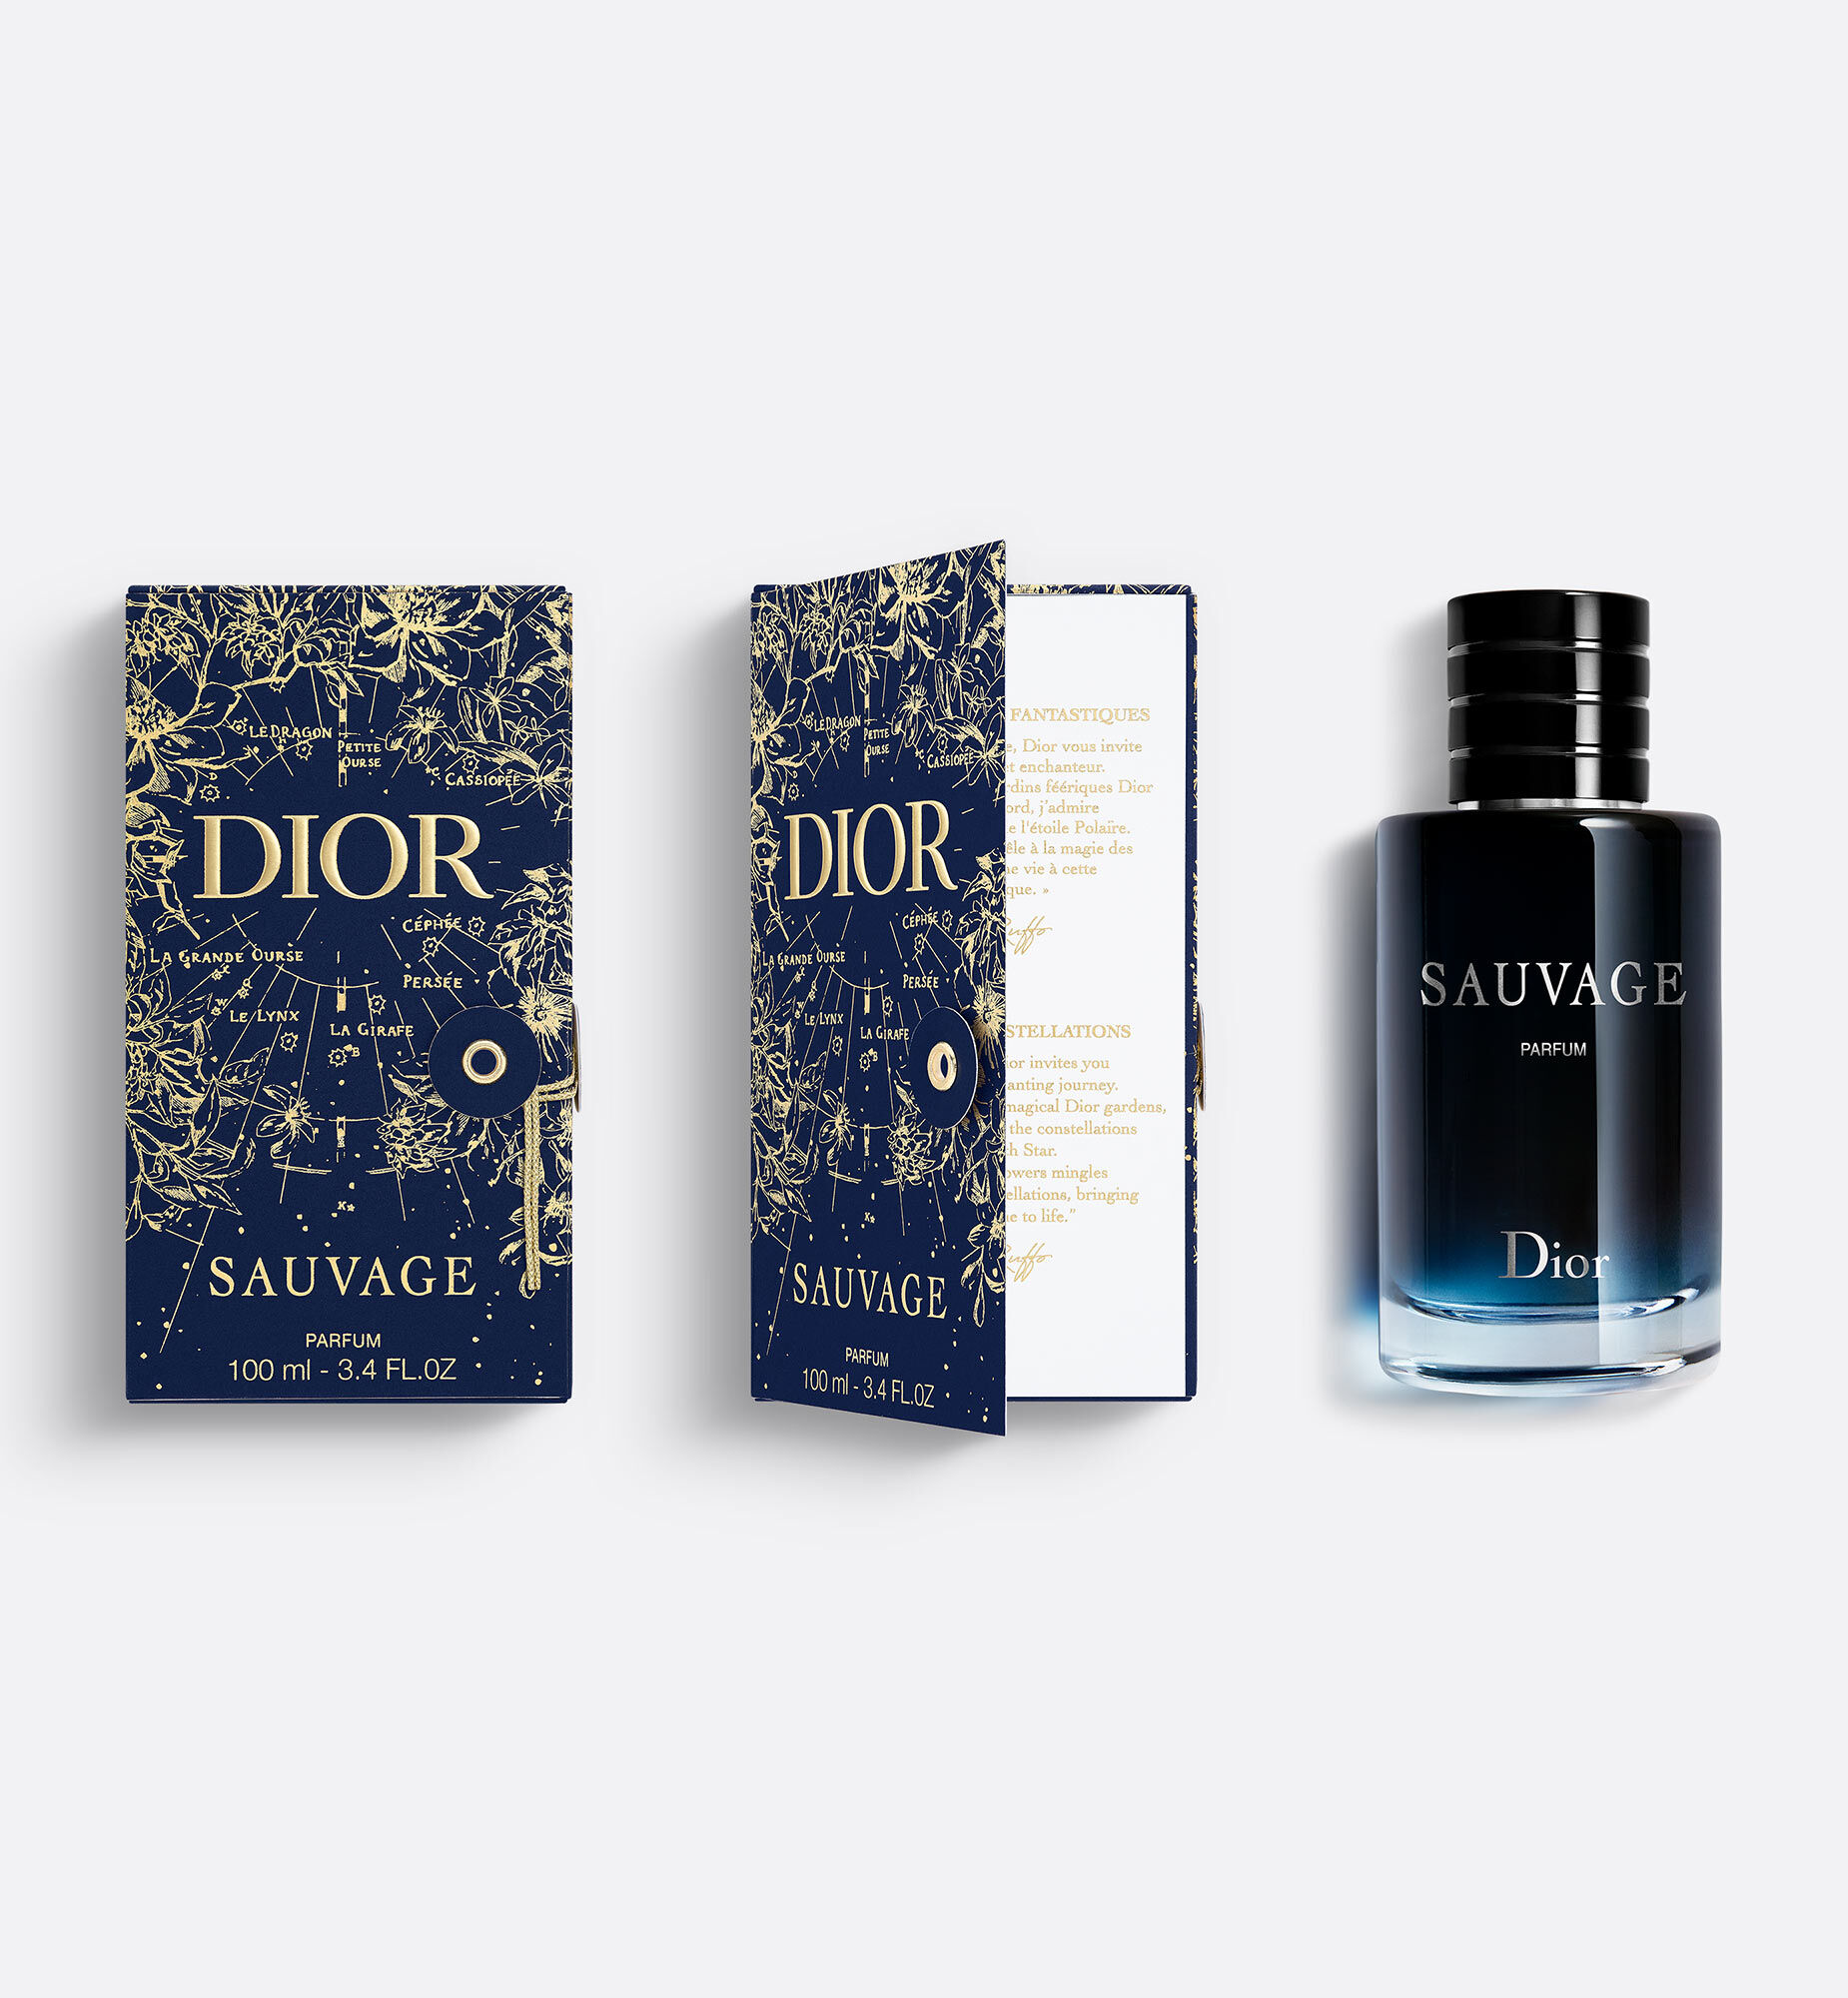 Dior Miss Dior Eau De Parfum Limited 2021  Nước hoa chính hãng 100 nhập  khẩu Pháp MỹGiá tốt tại Perfume168